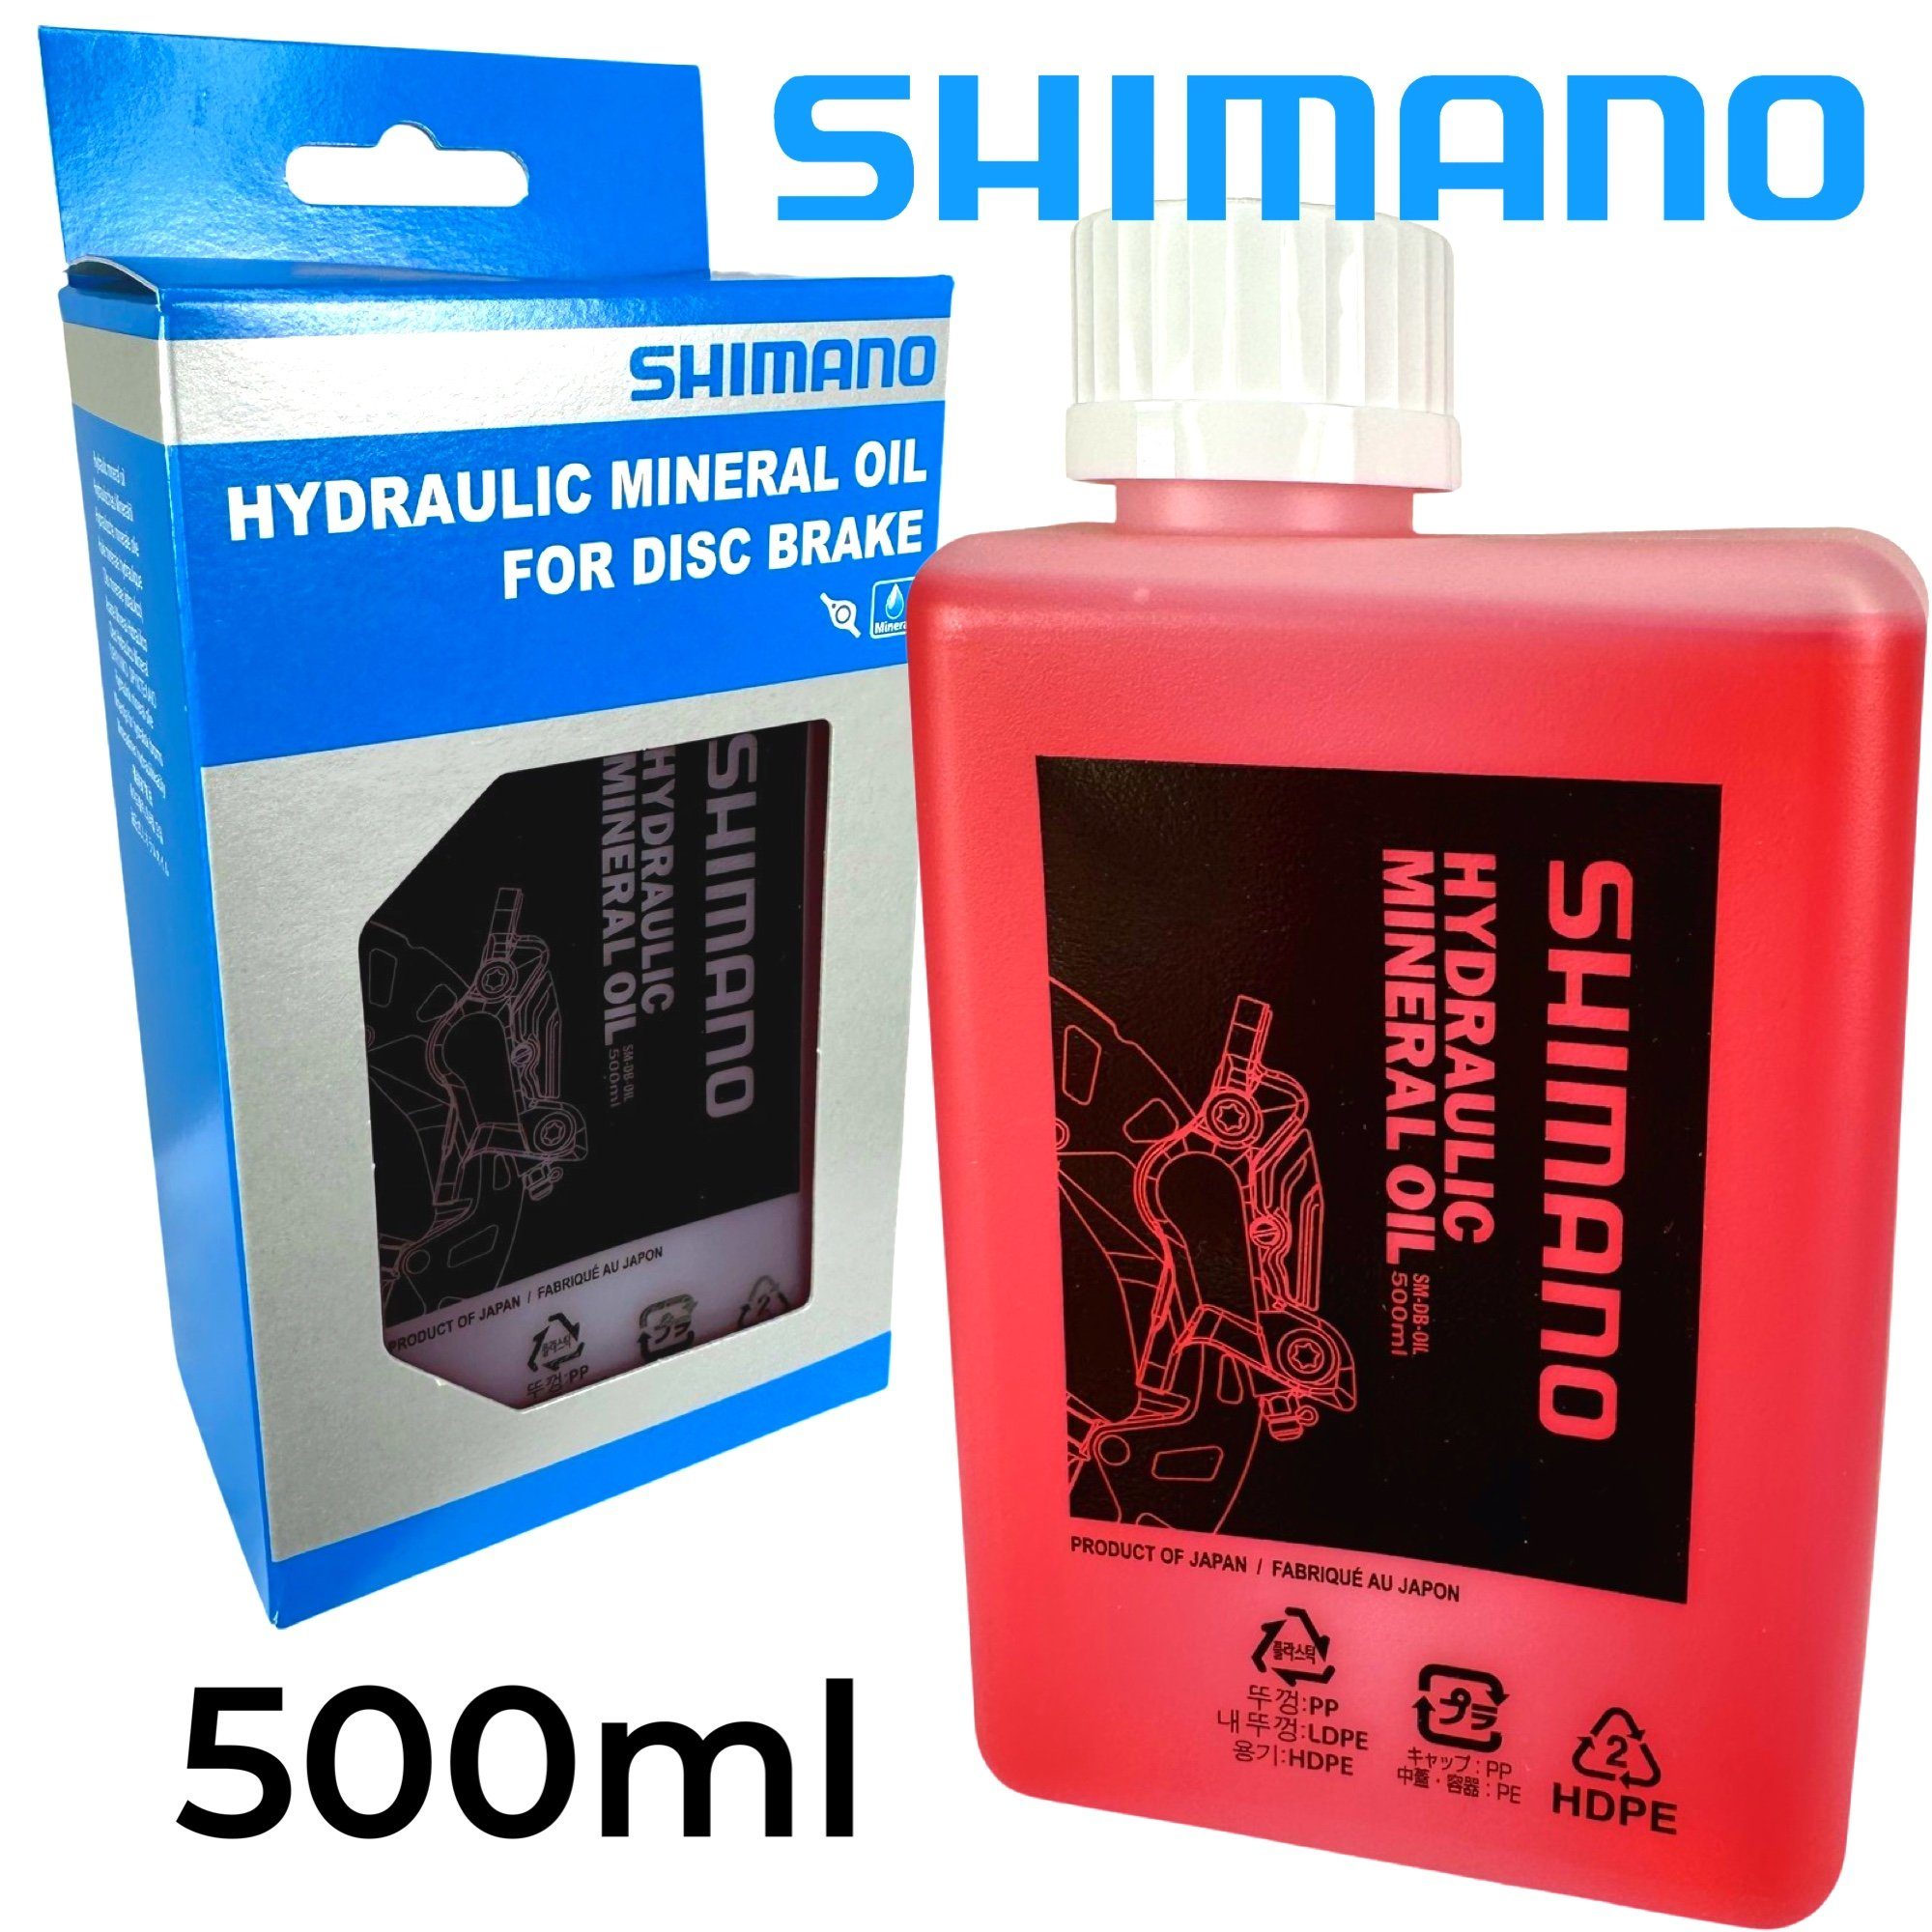 Shimano Fahrrad Grossflasche Shimano Scheibenbremsen Fahrrad-Montageständer 500ml Hydraulik Mineralöl